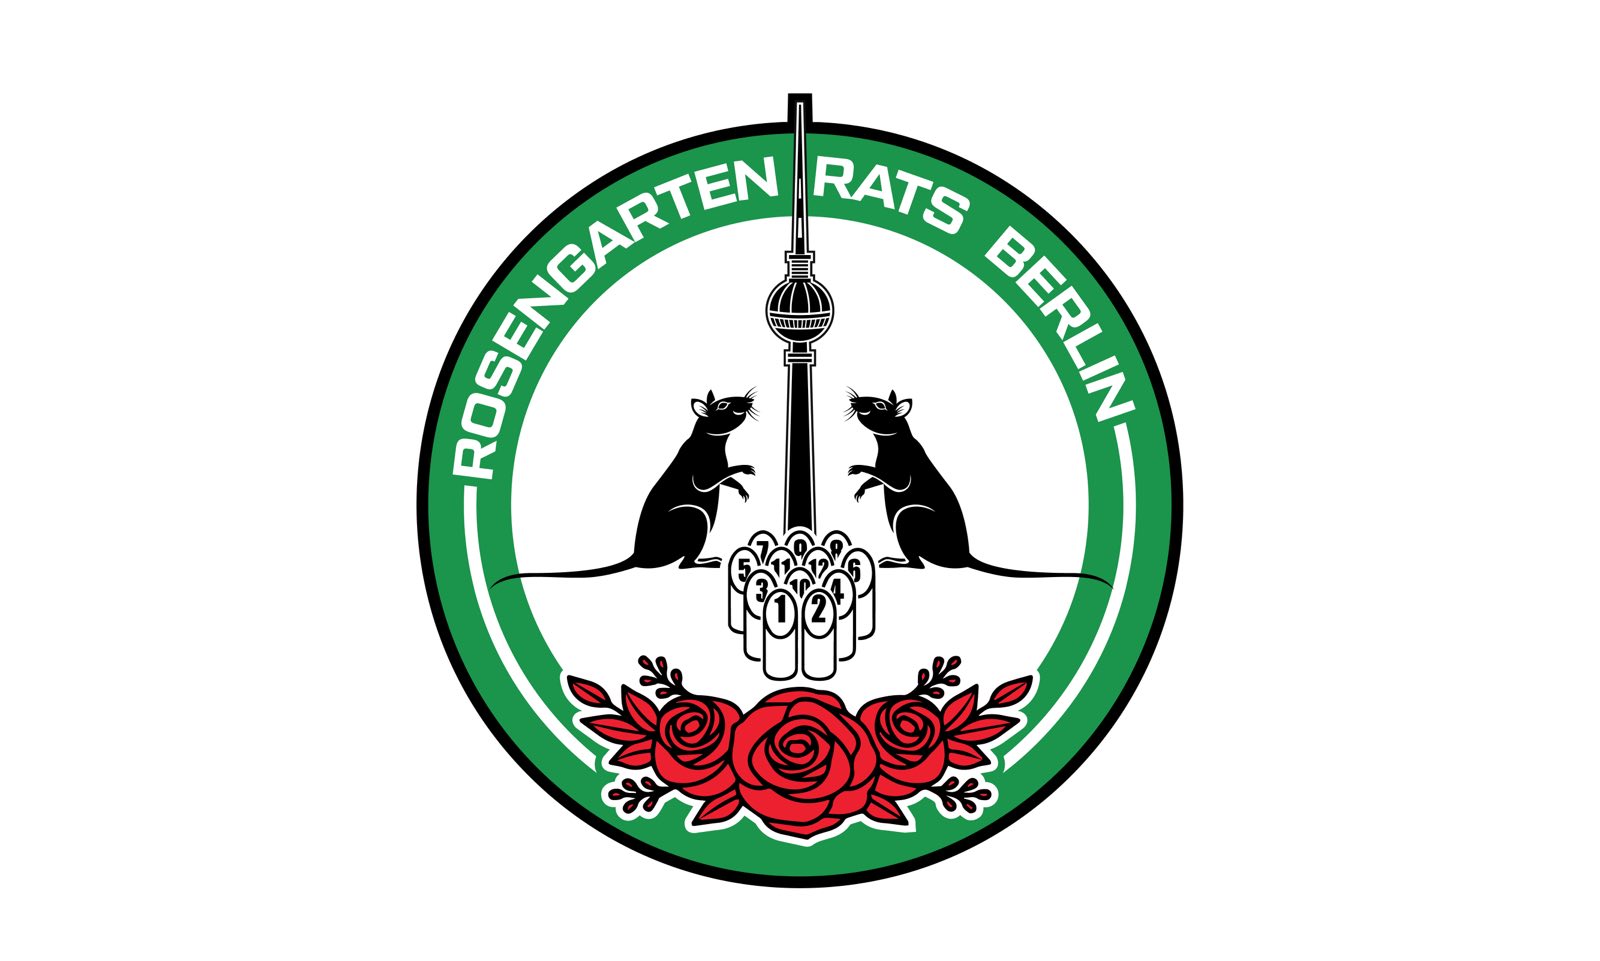 Rosengarten Rats Berlin